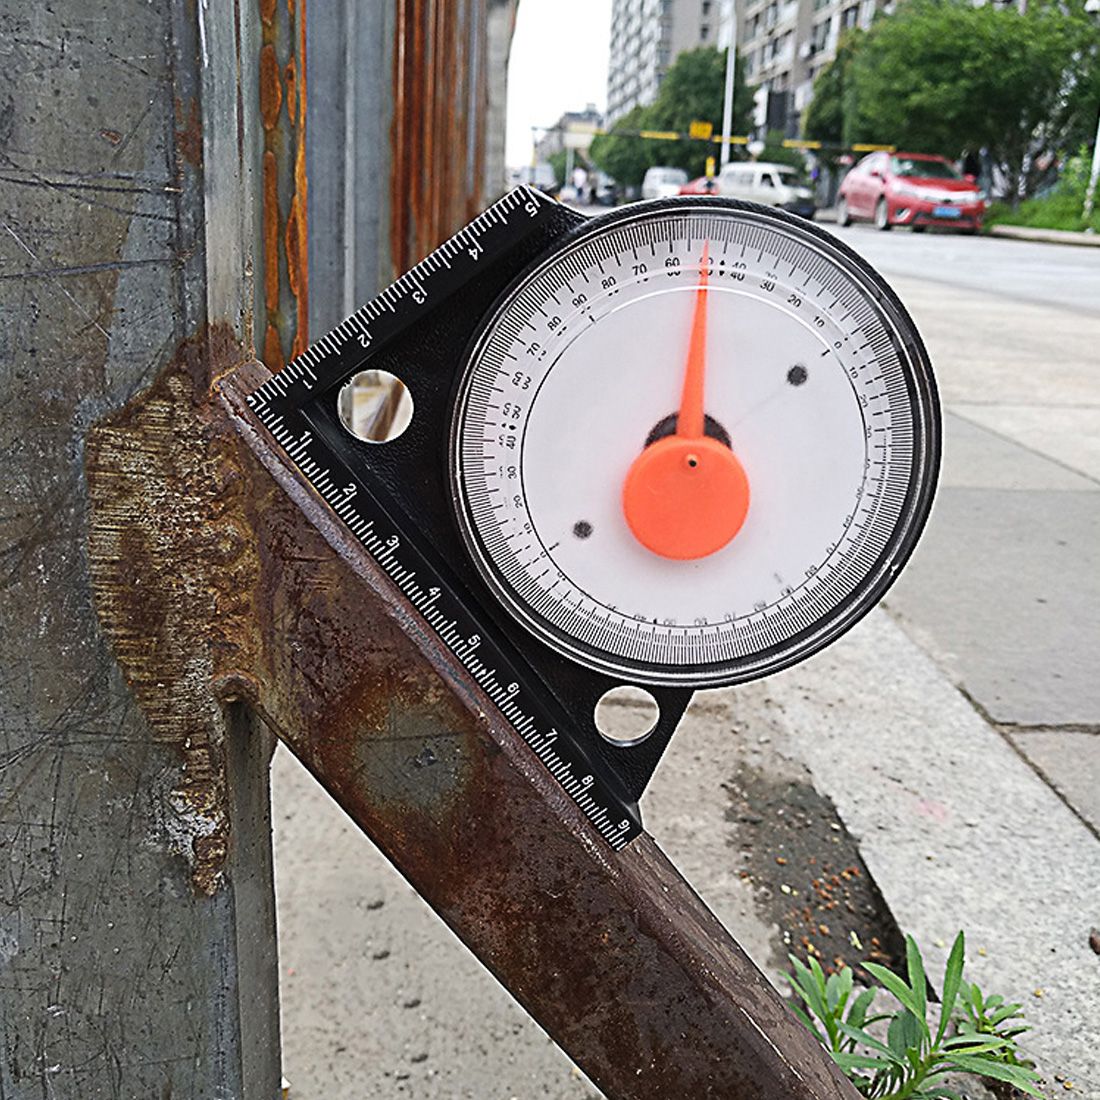 Multifunctional-Inclinometer-Protractor-Tilt-Level-Meter-Angle-Finder-Clinometer-Slope-Gauge-Measure-1665911